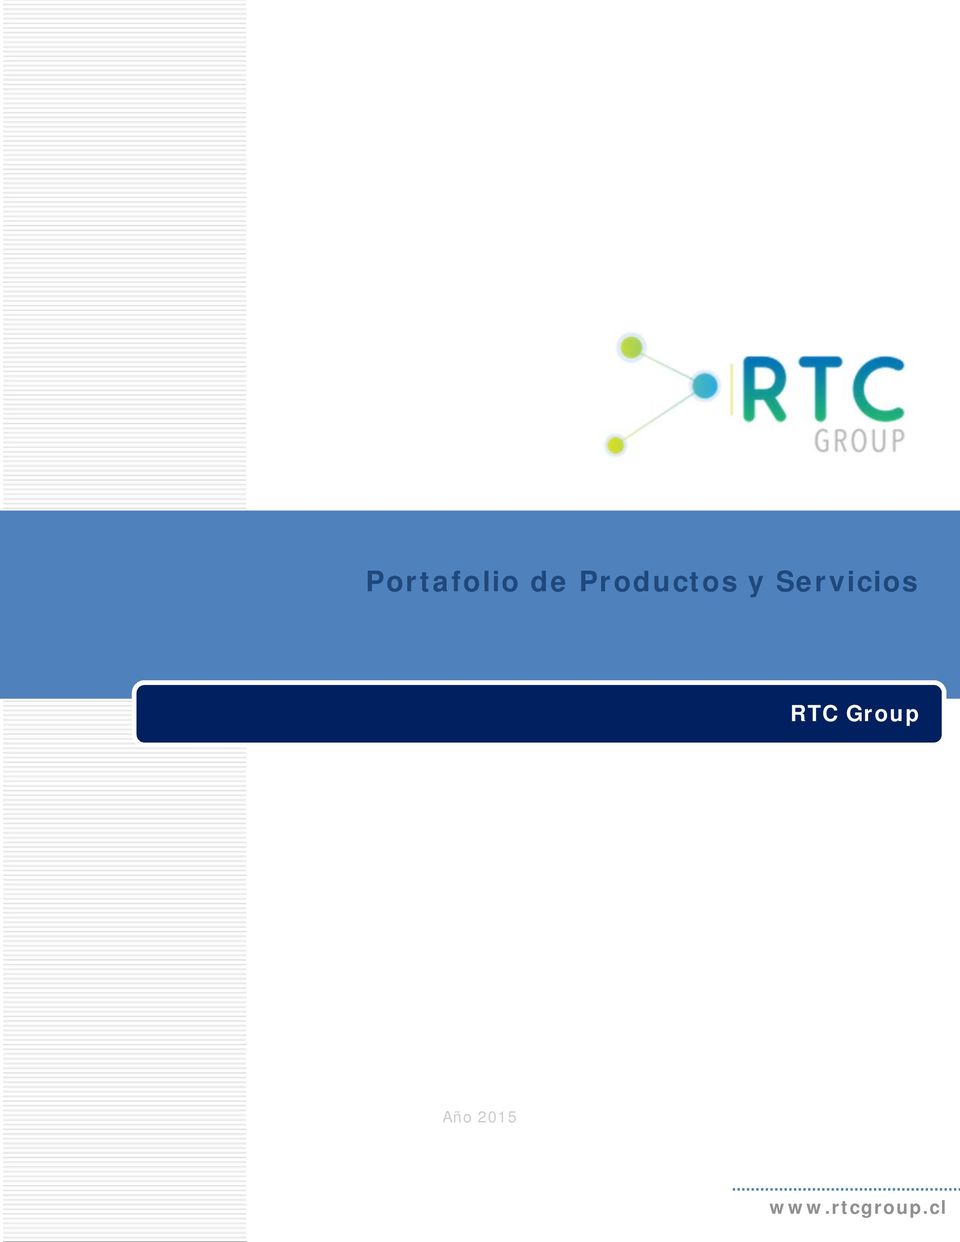 Servicios RTC